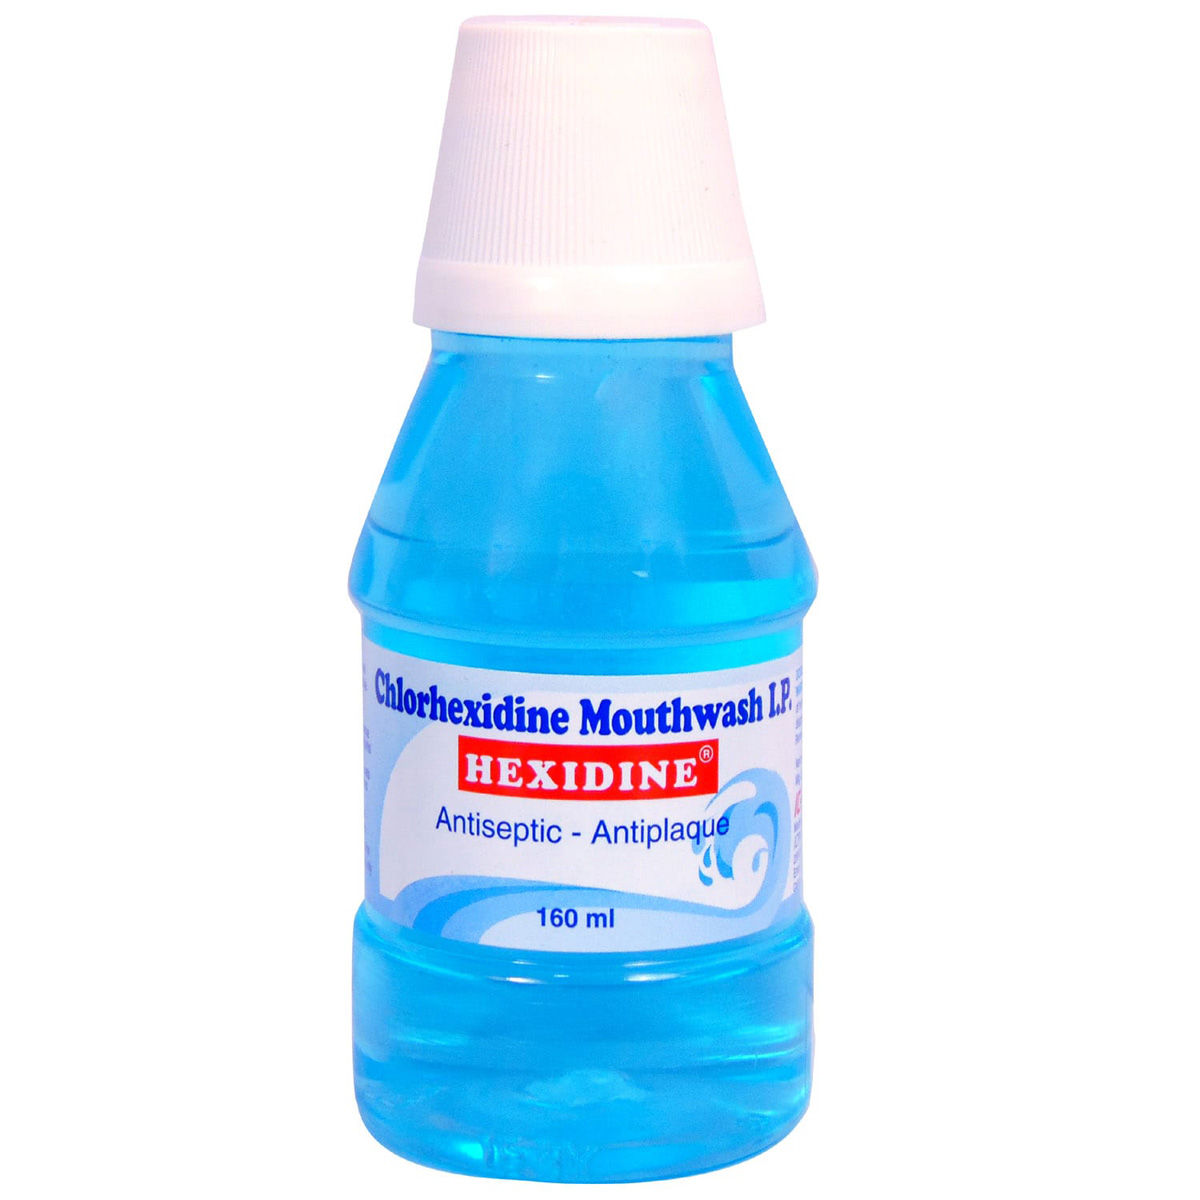 Buy Hexidine Mouthwash 160 ml Online